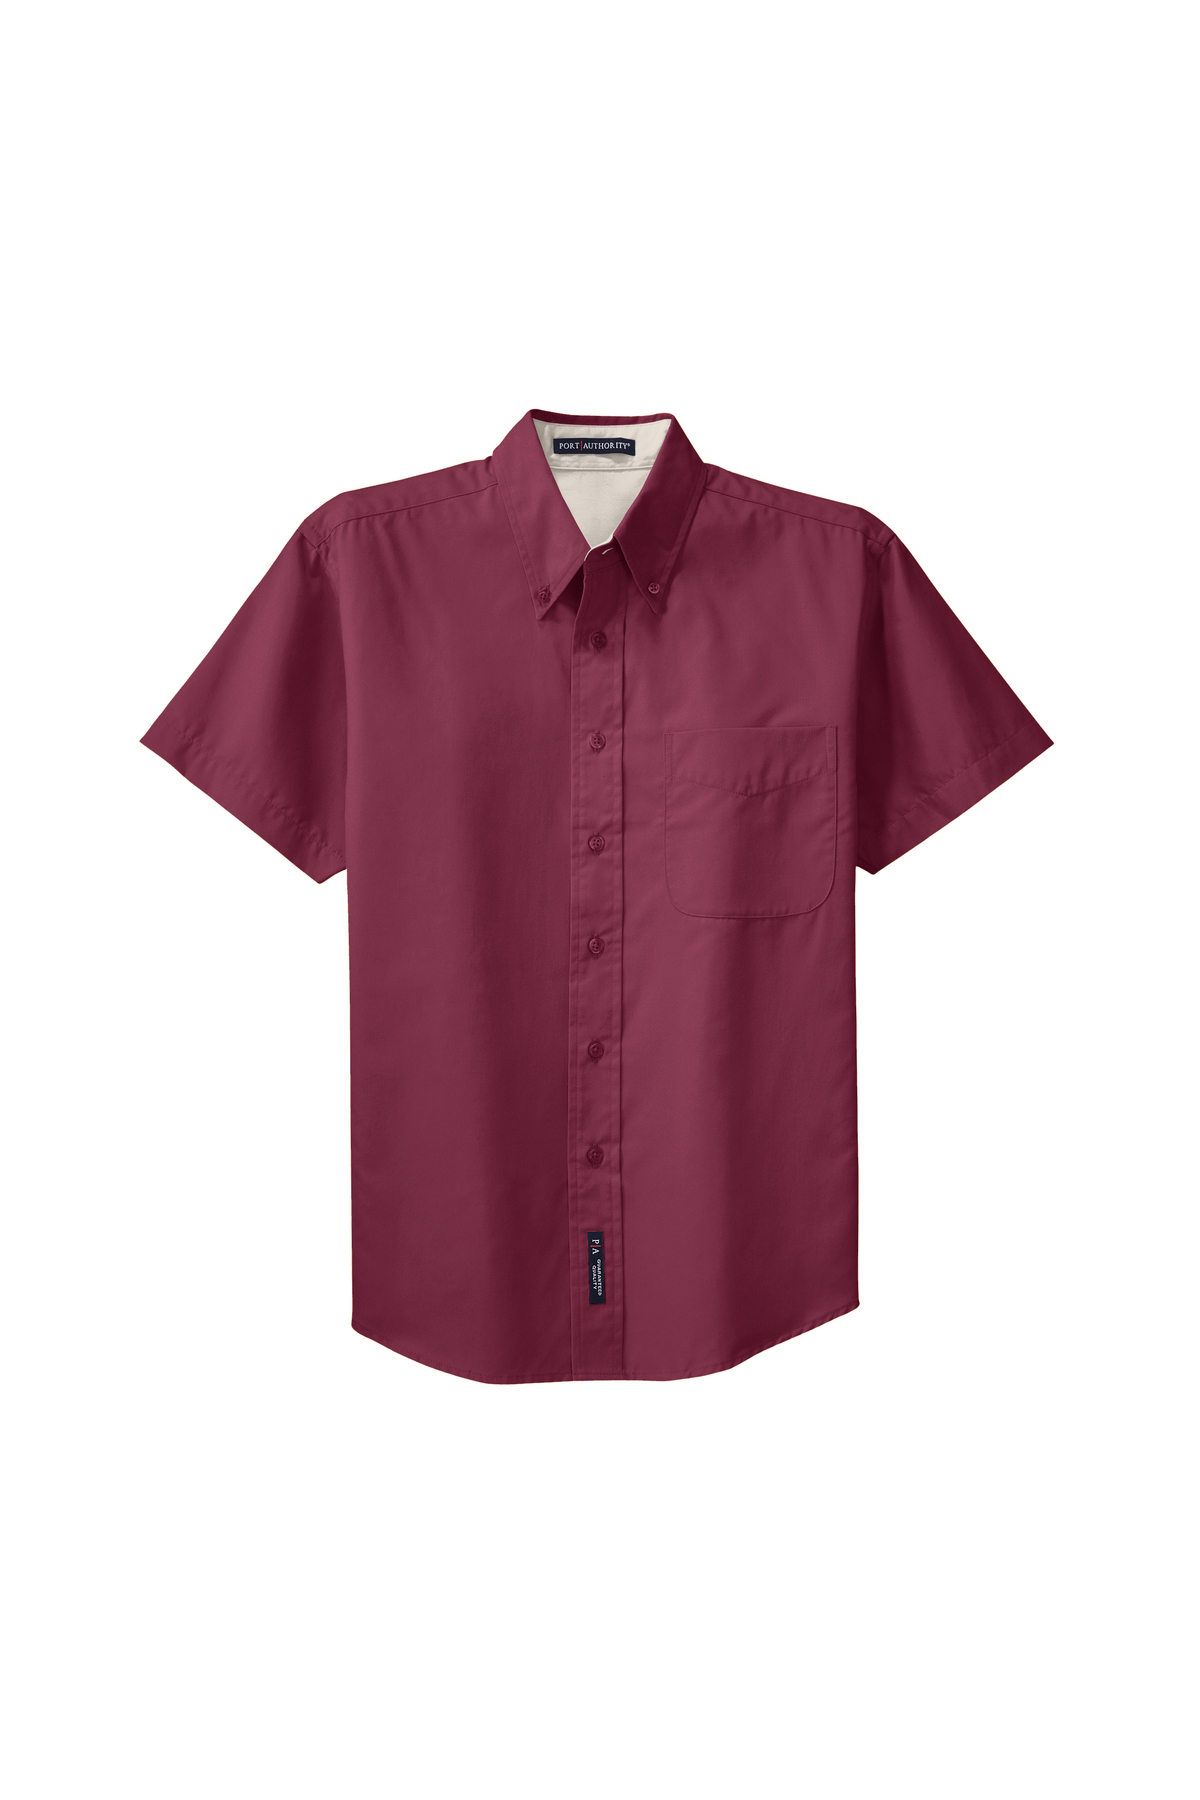 Comfort Code Soft & Light Short Sleeve Sleep Shirt - 20271802